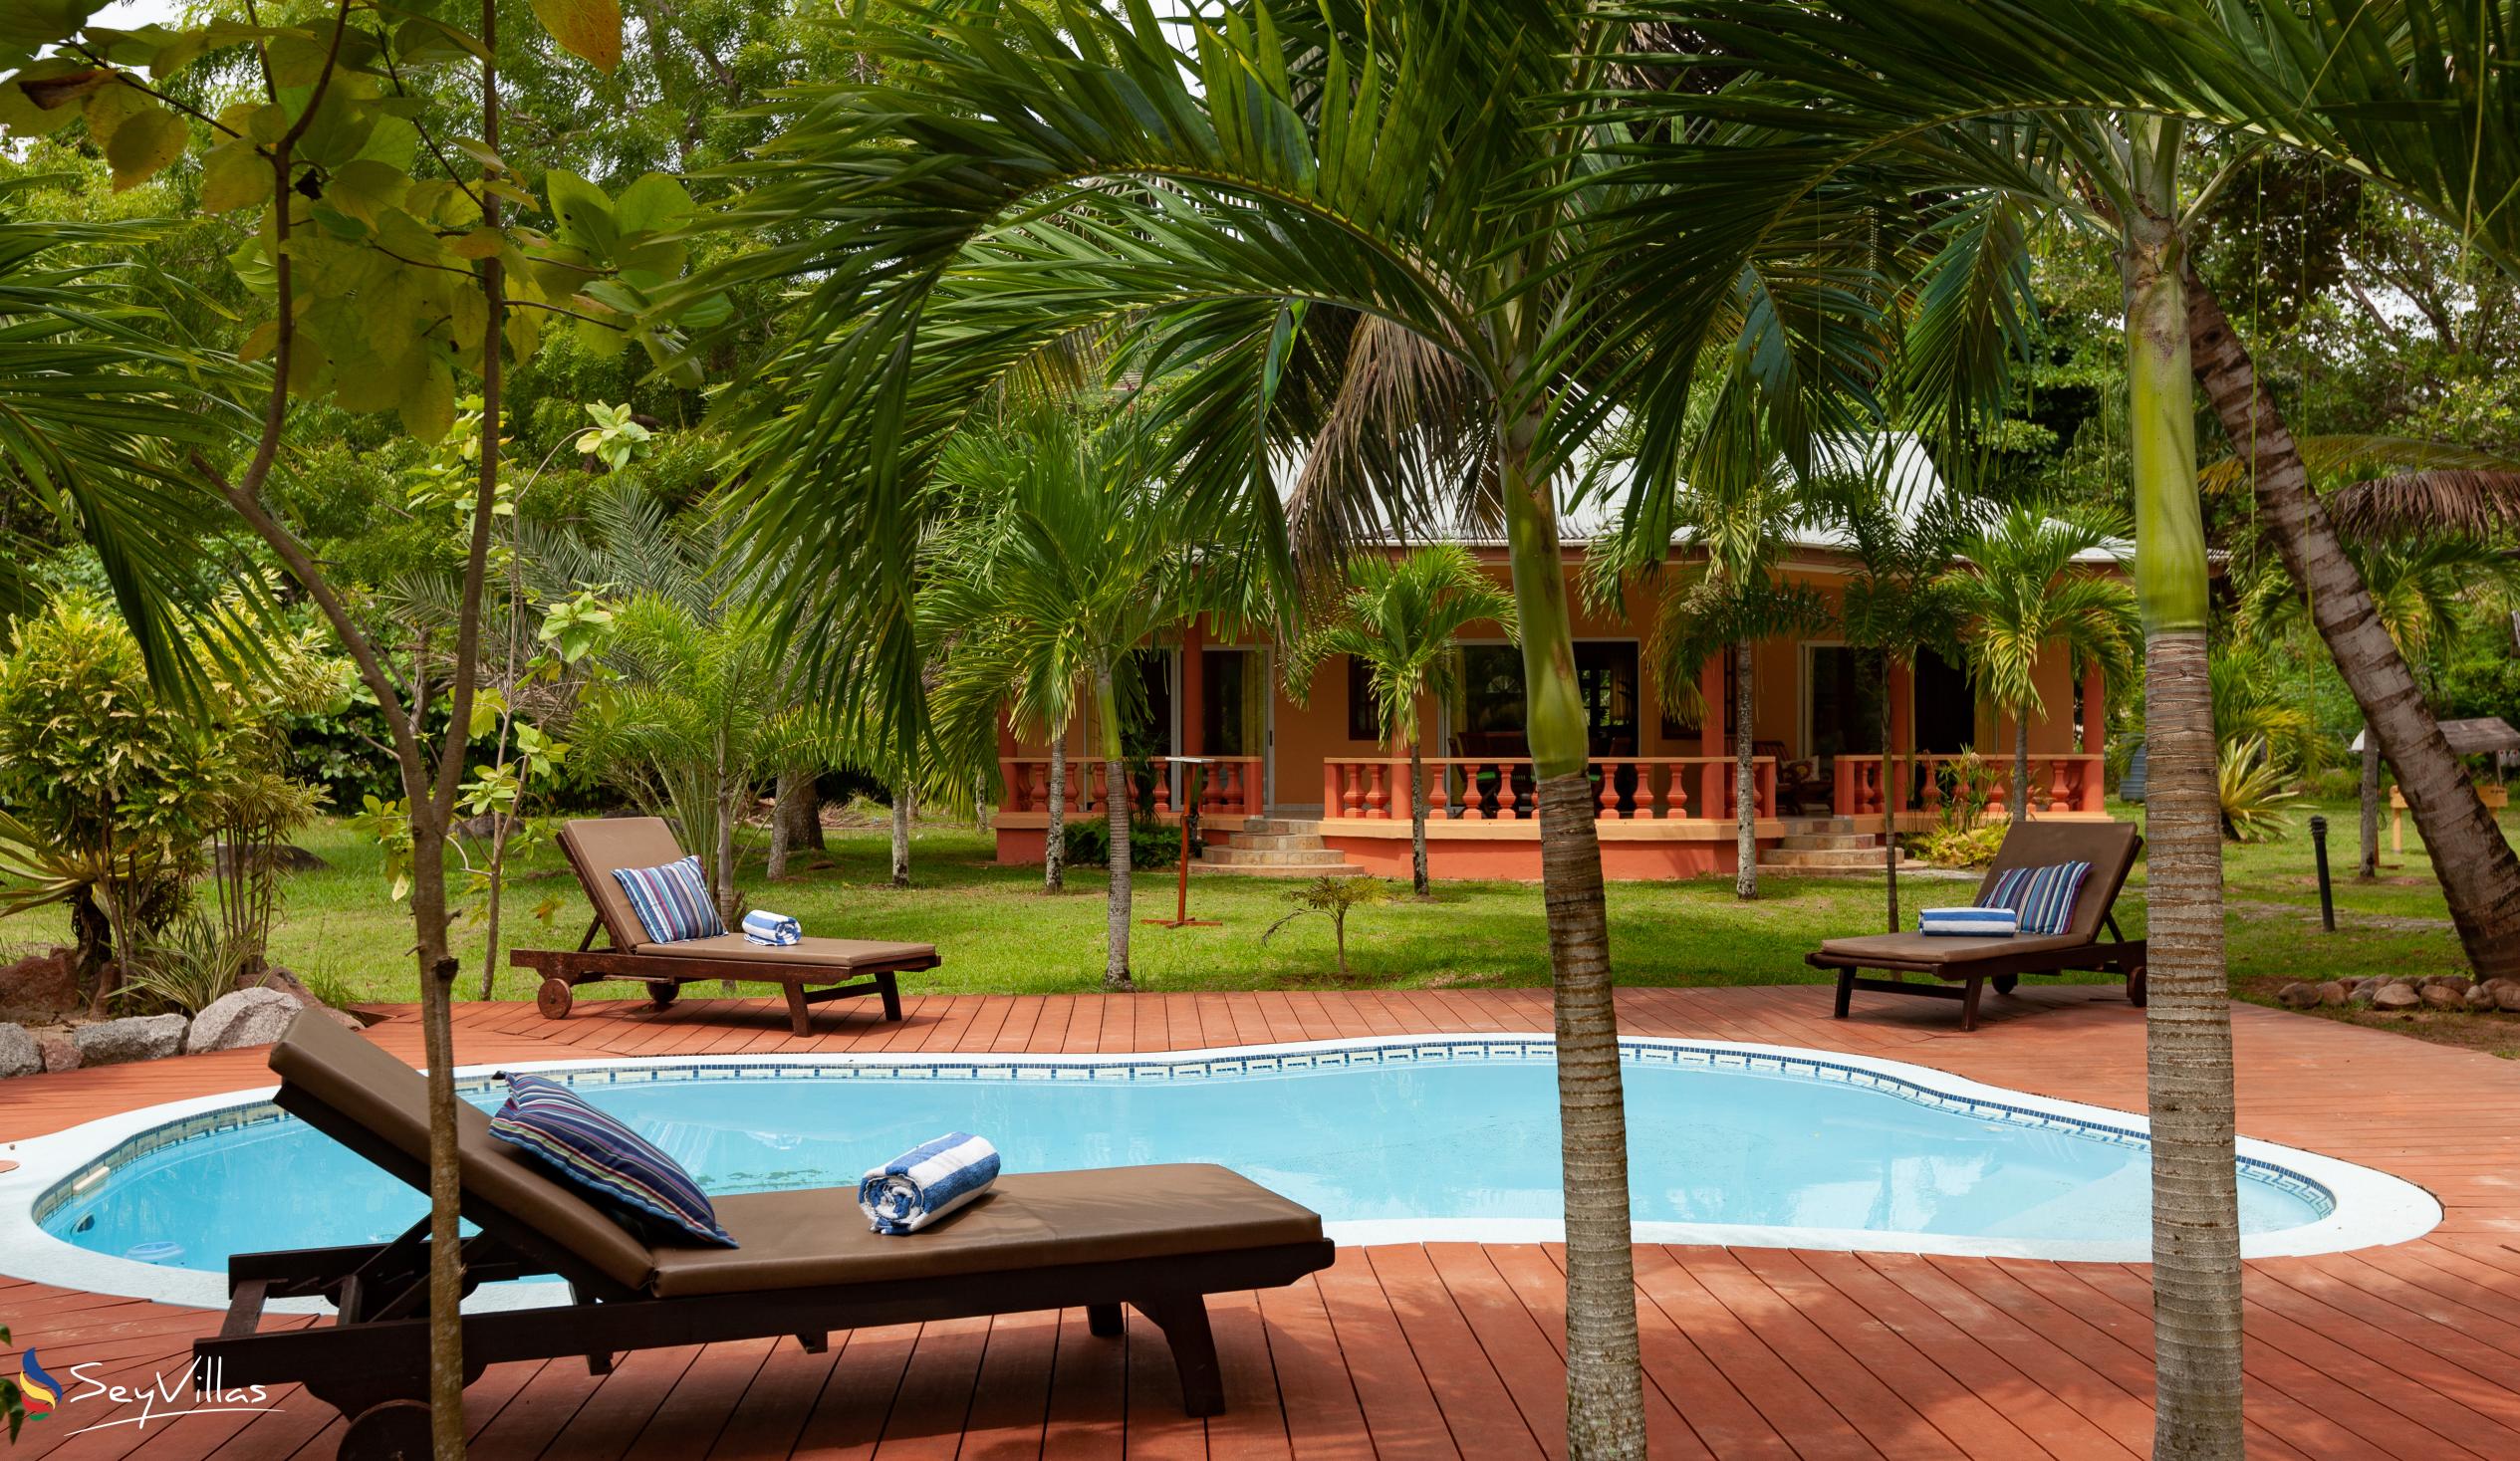 Foto 91: Villas des Alizes - Garten Villa mit zwei Schlafzimmern - Praslin (Seychellen)